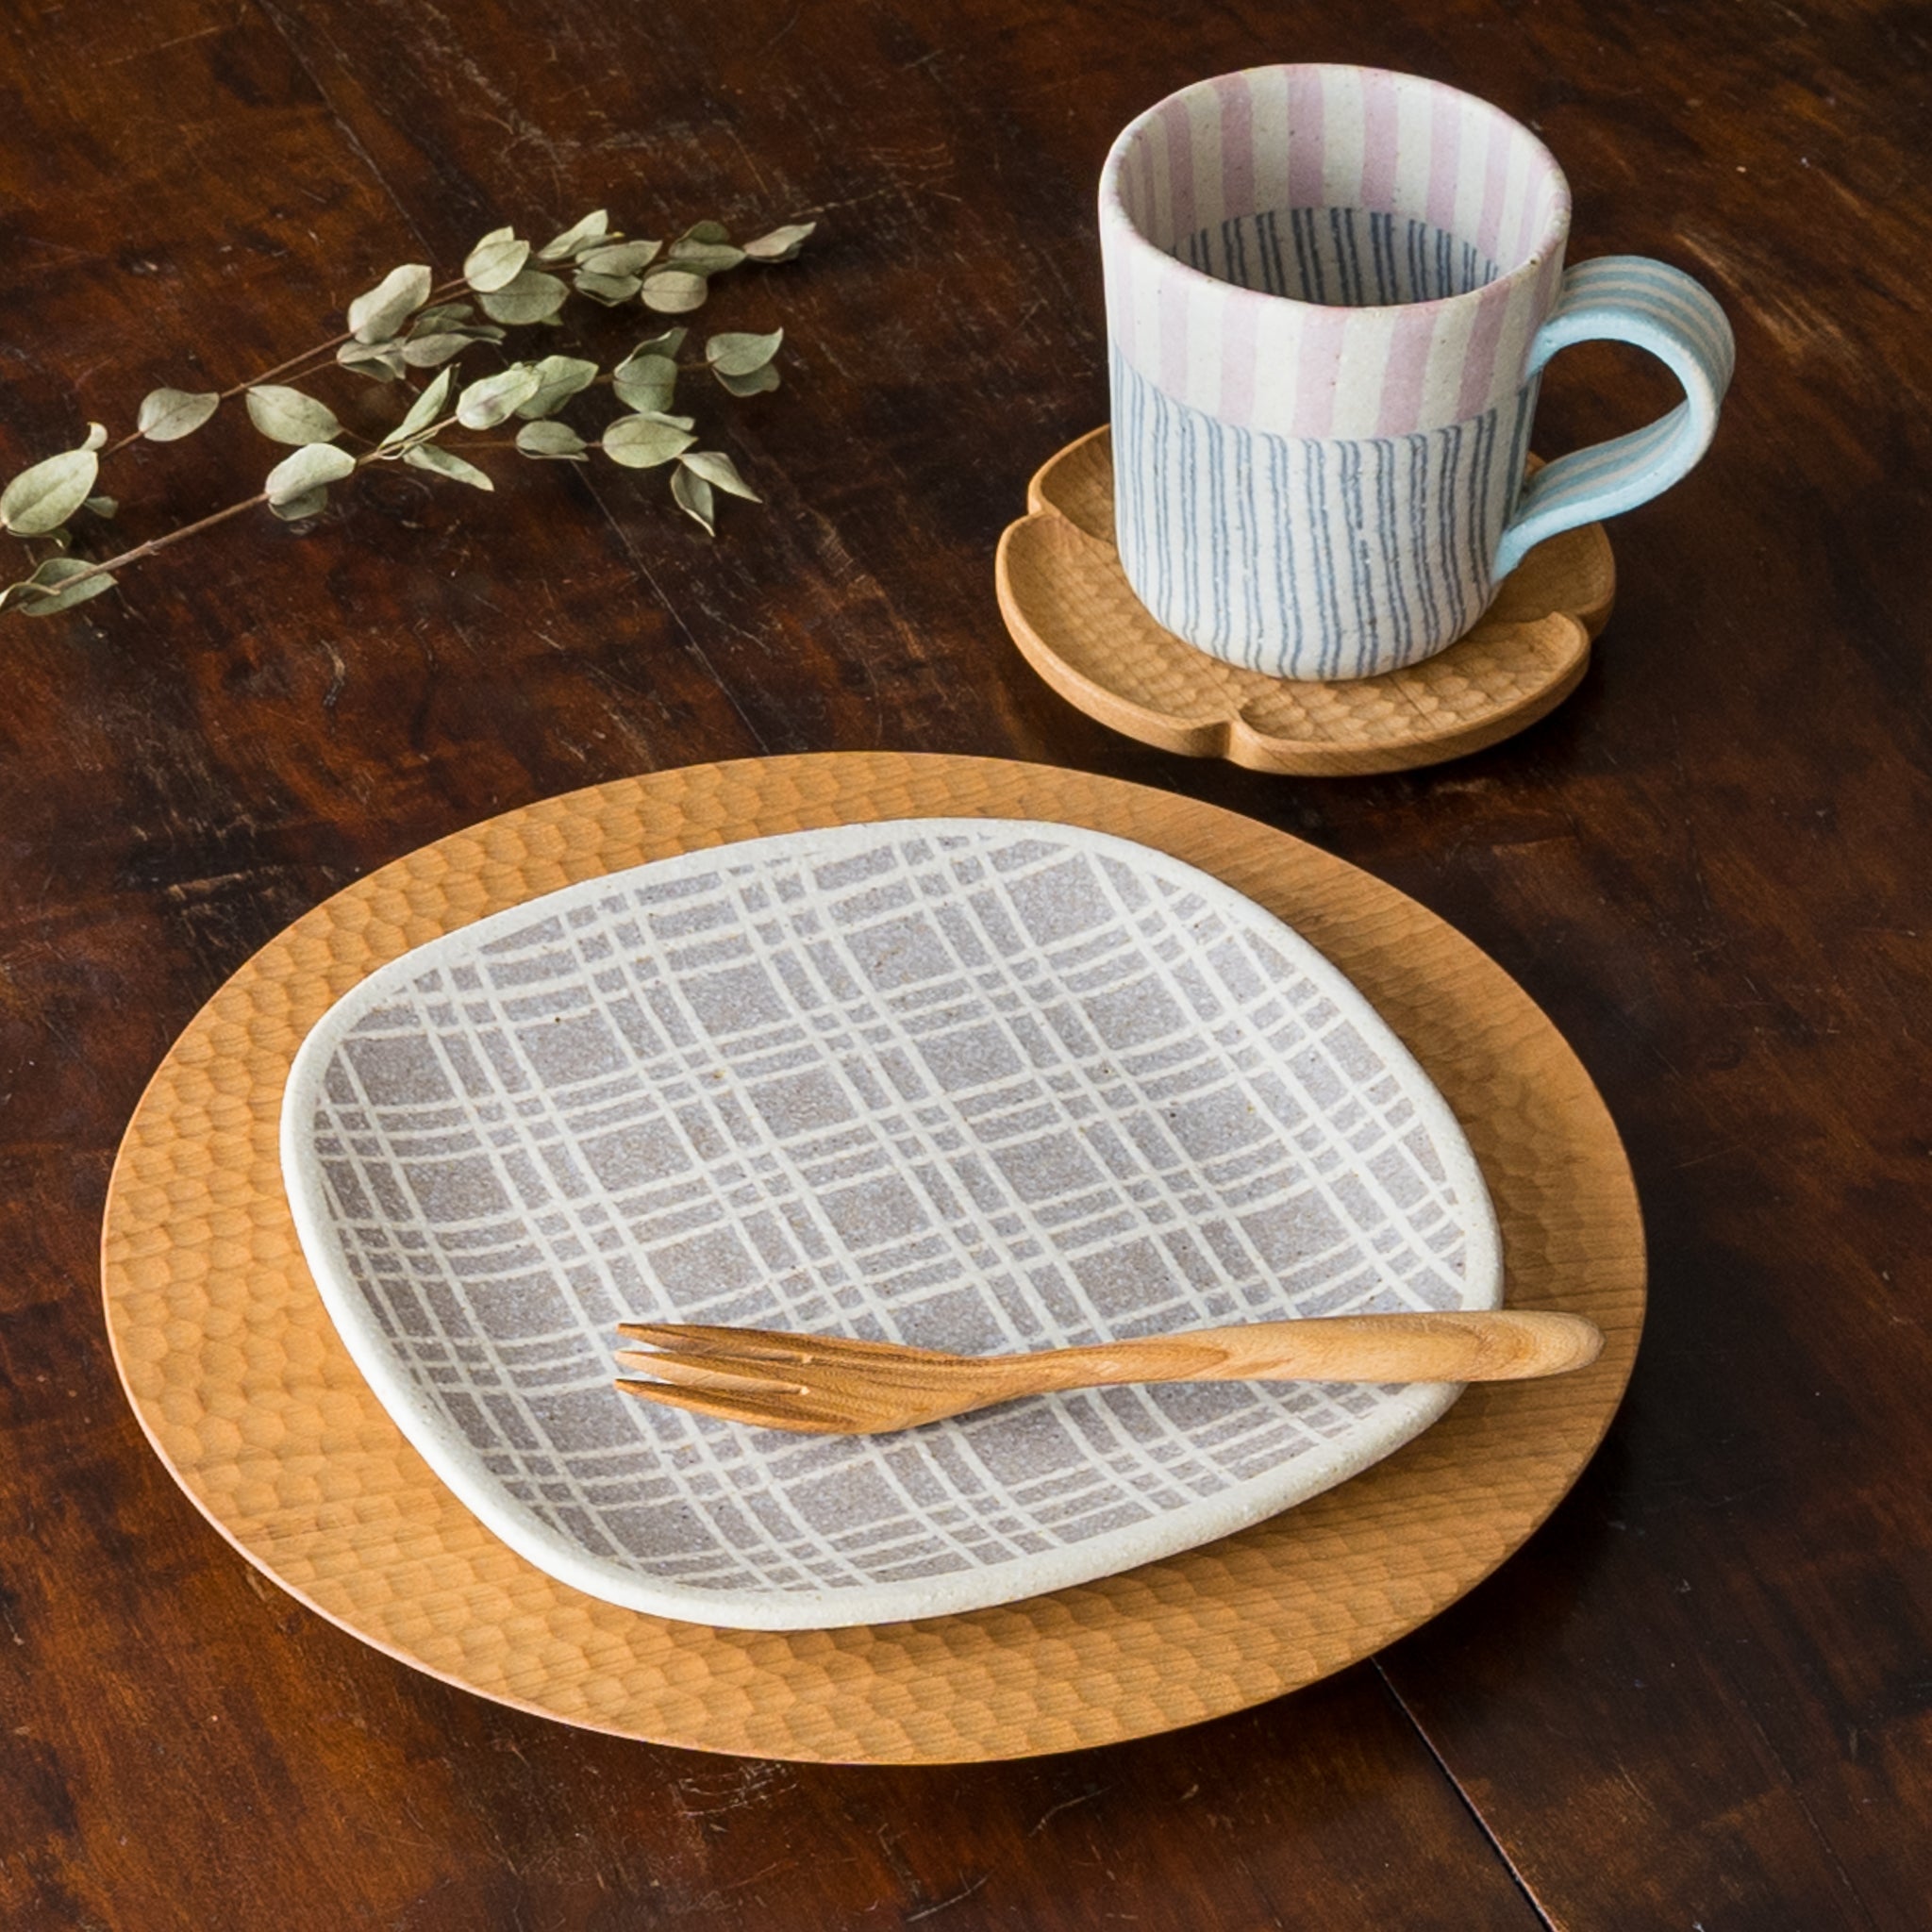 Hanako Sakashita's kneaded square plate and mug make bread eating even more enjoyable.